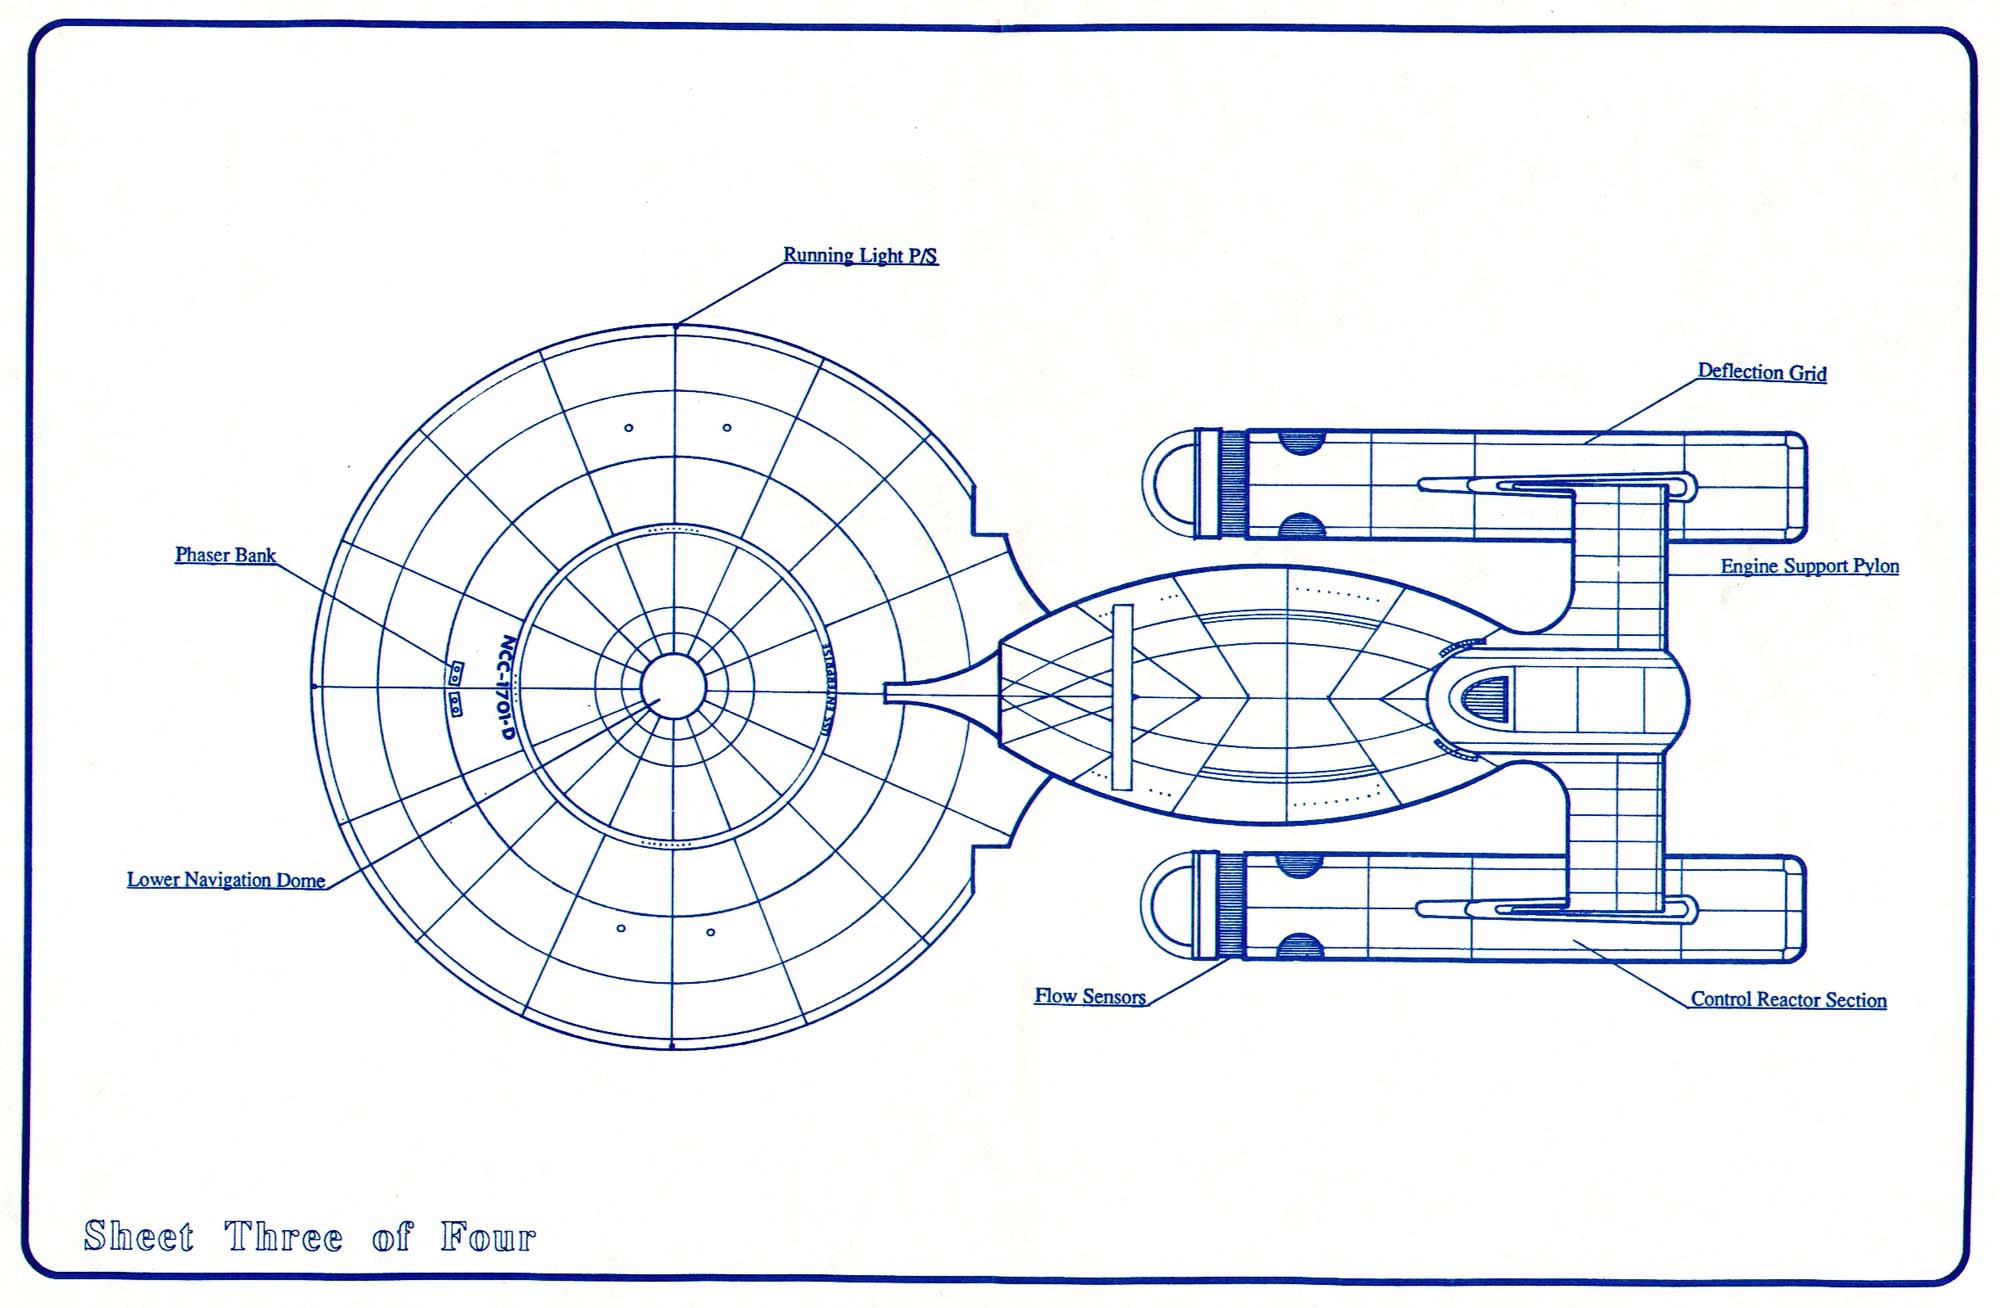 star trek fleet command centurion blueprints